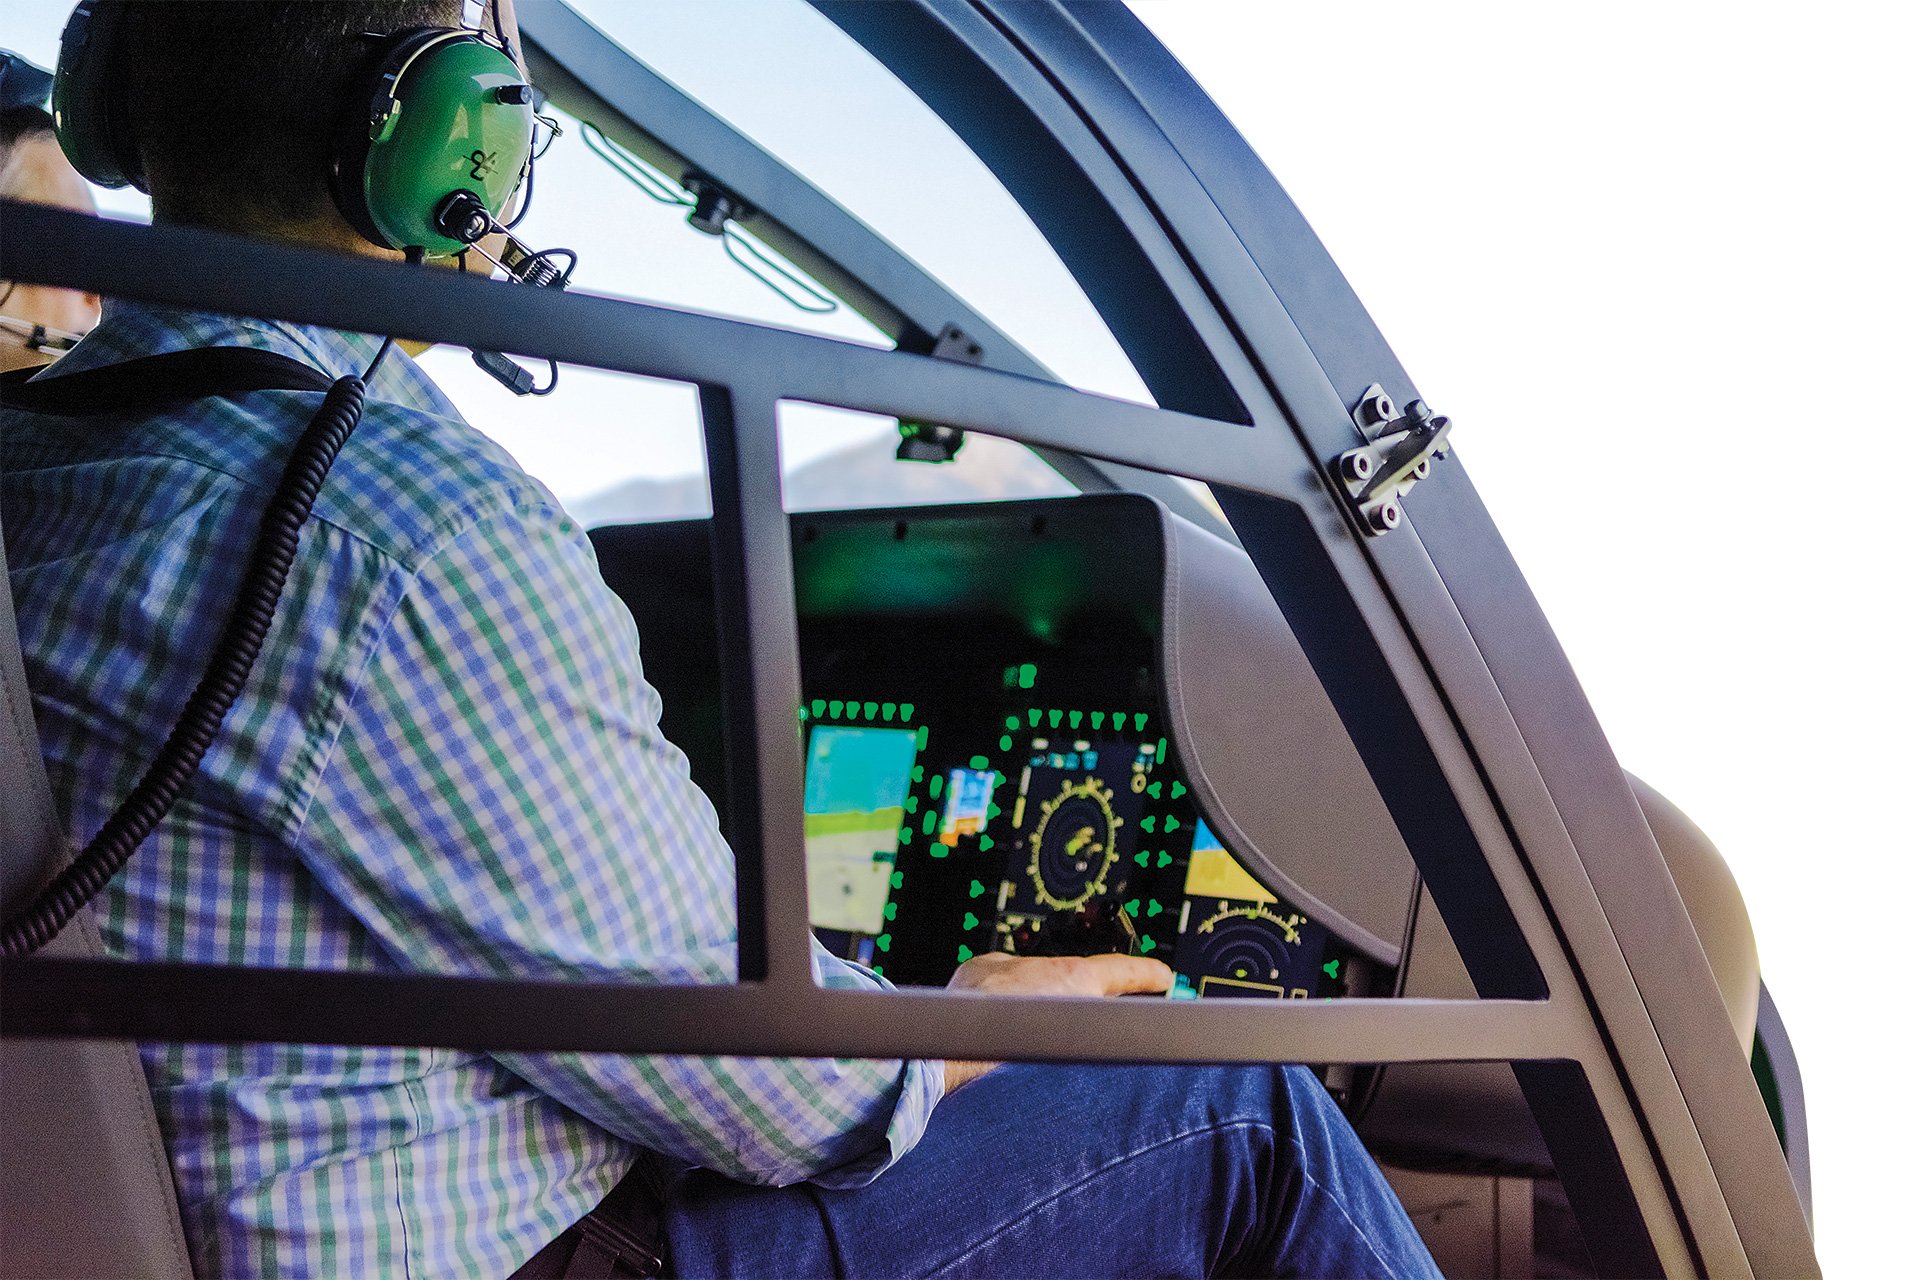  Reiser H135 Full Flight Simulator approved by EASA